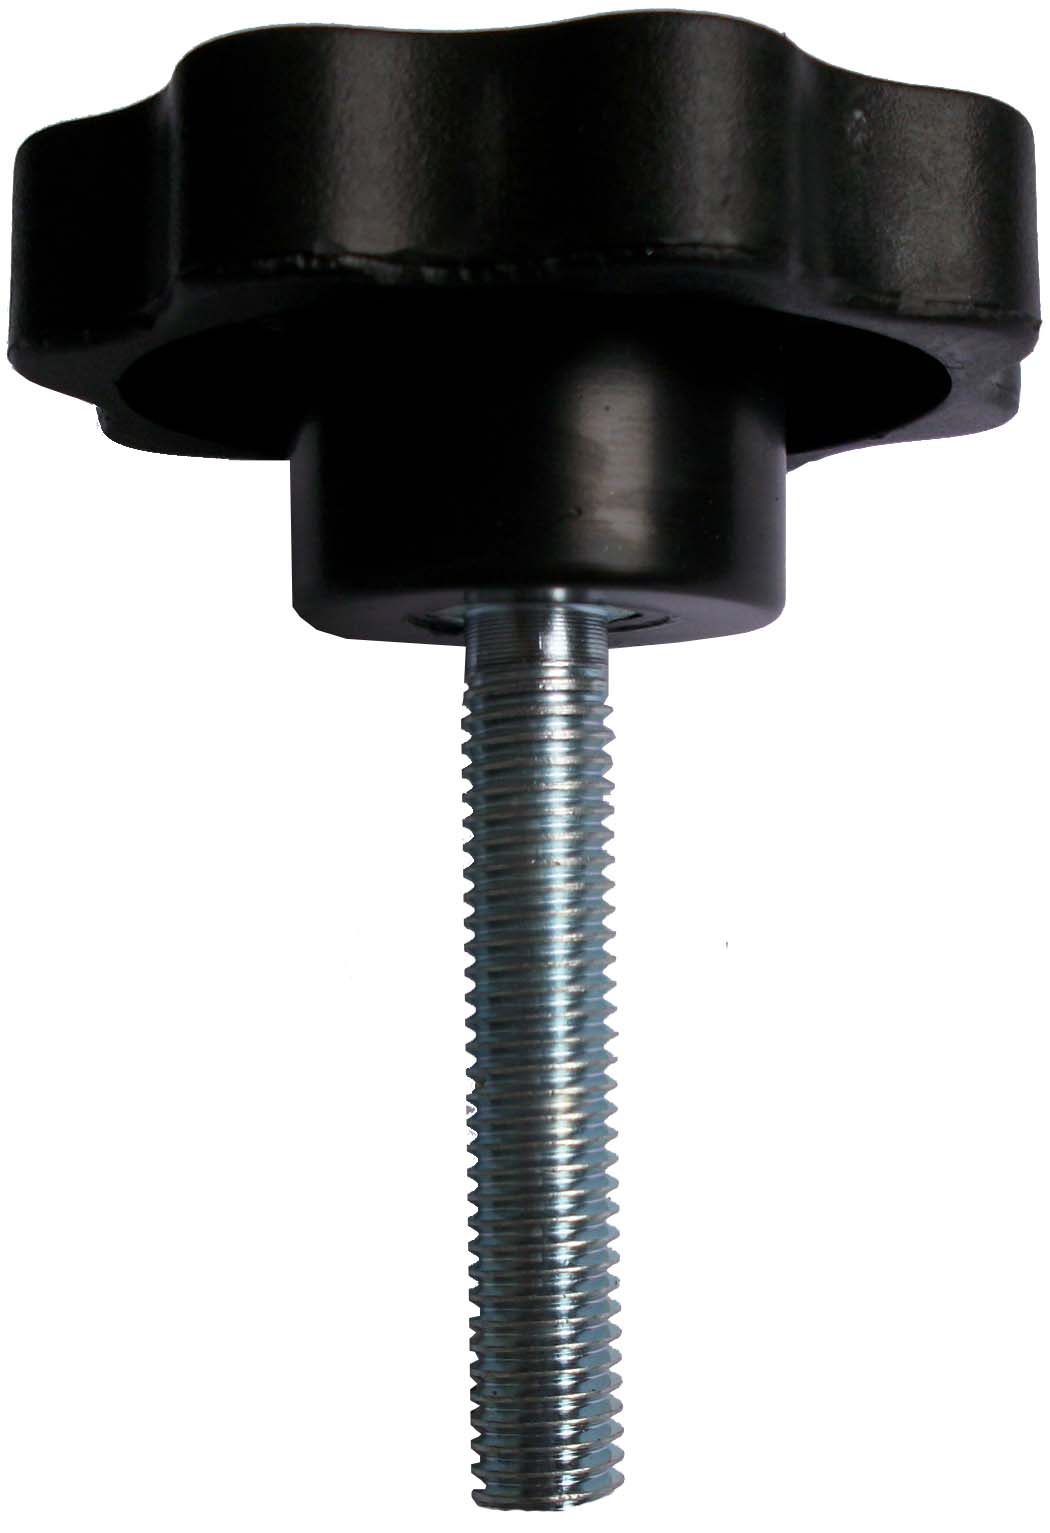 RM3150拧紧螺栓 (1).JPG